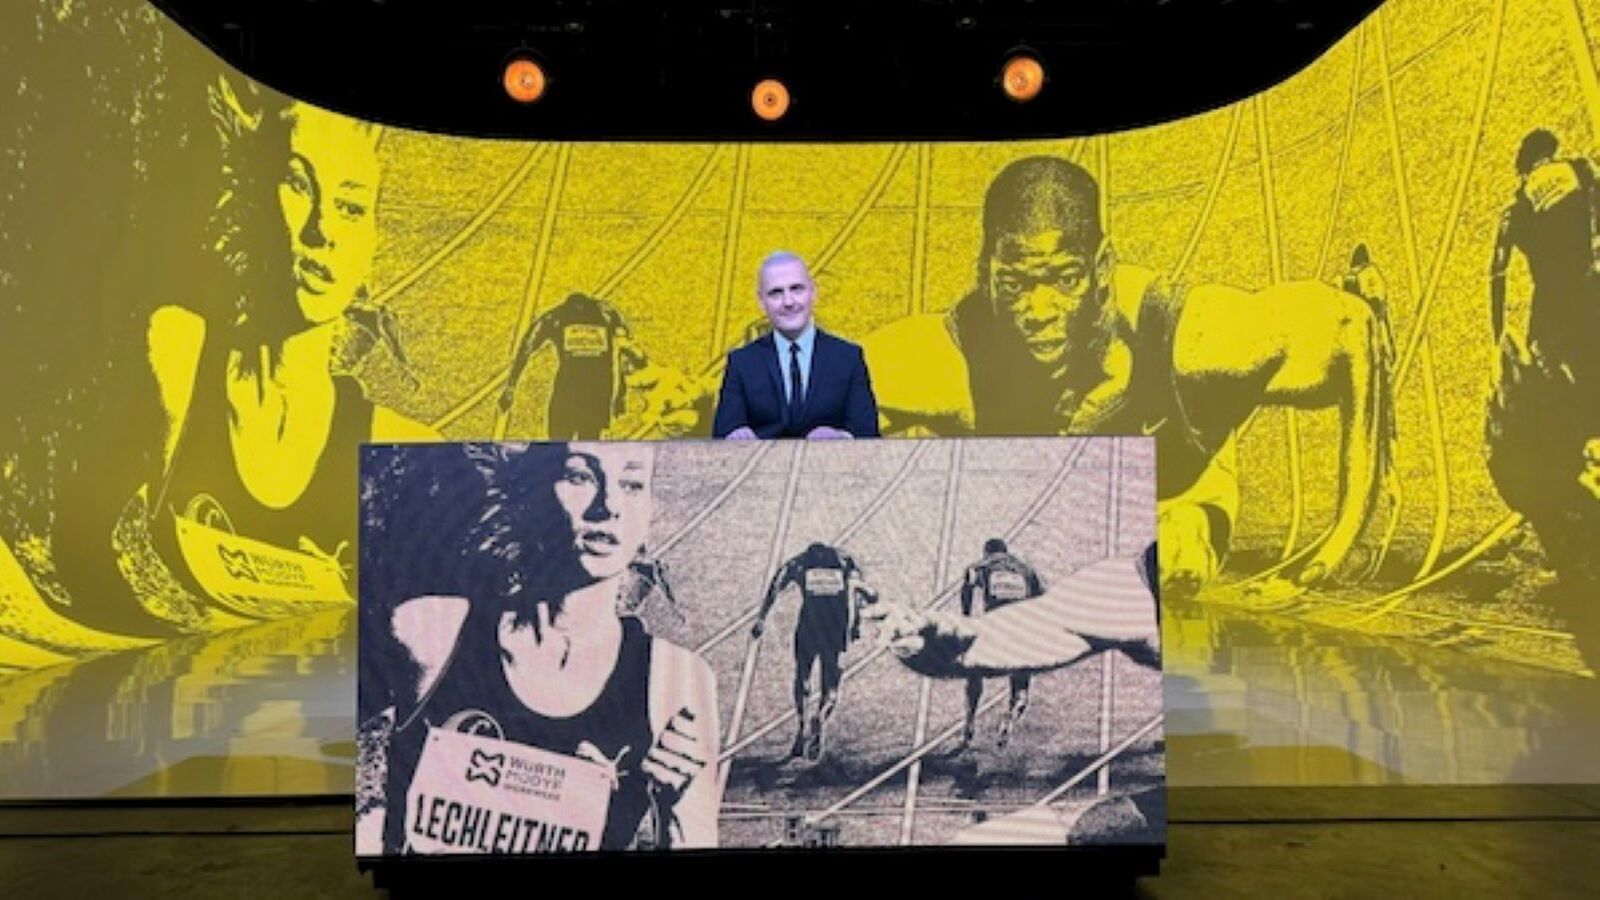 Le Iene presentano Inside: “Doping: davvero vincono sempre i migliori?”, stasera 28 marzo su Italia 1